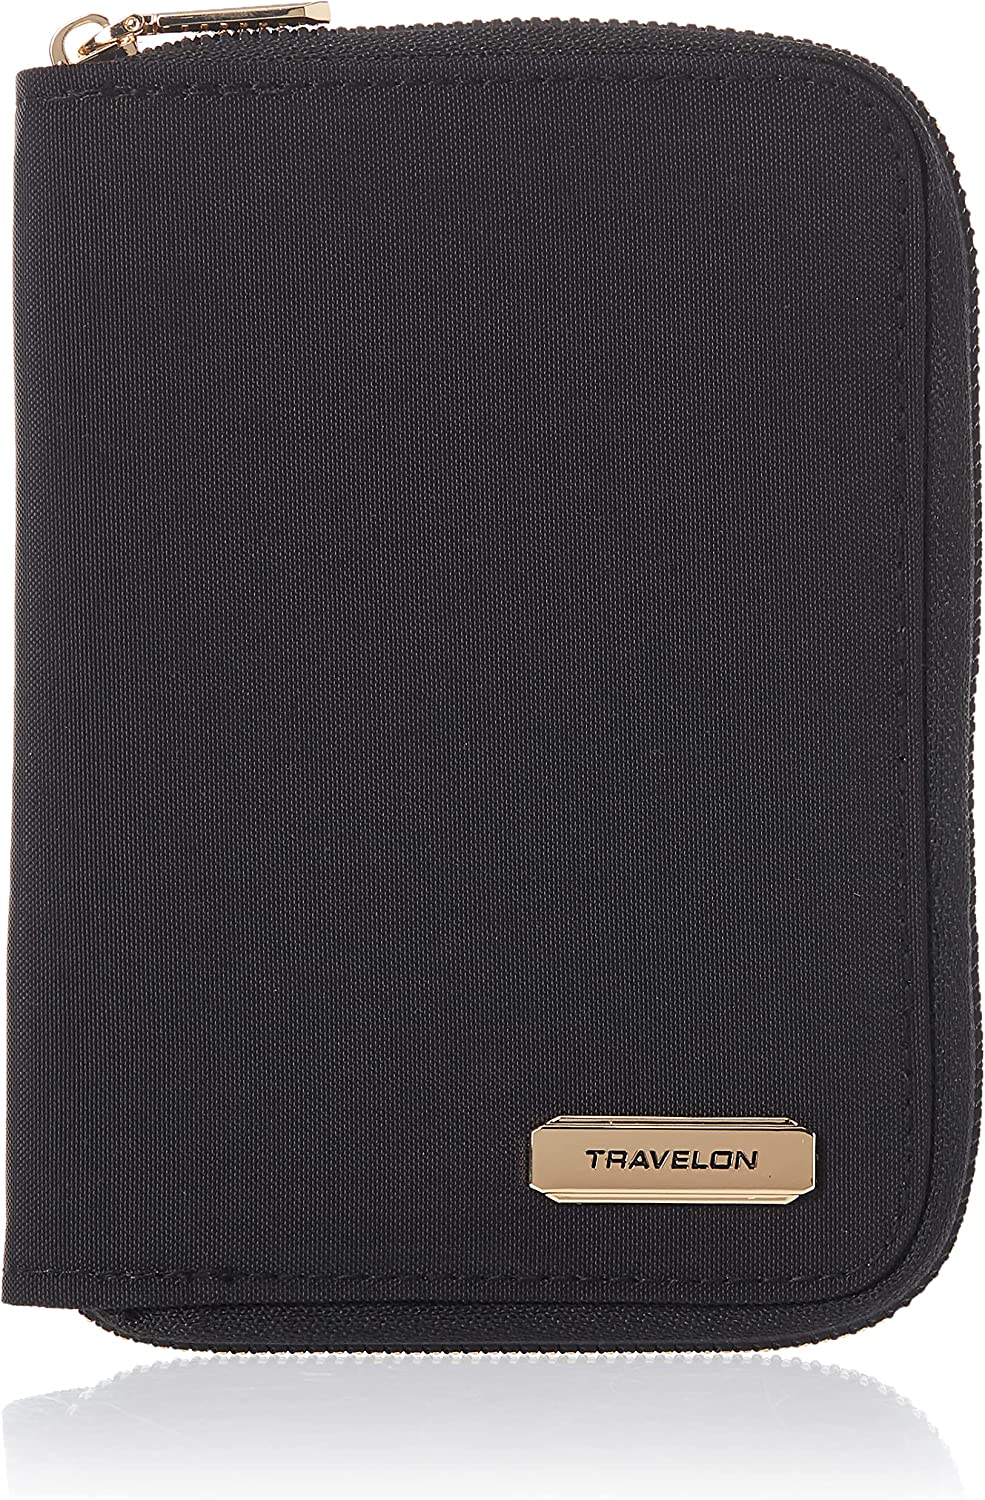 Travelon Passport Zip Wallet 43401